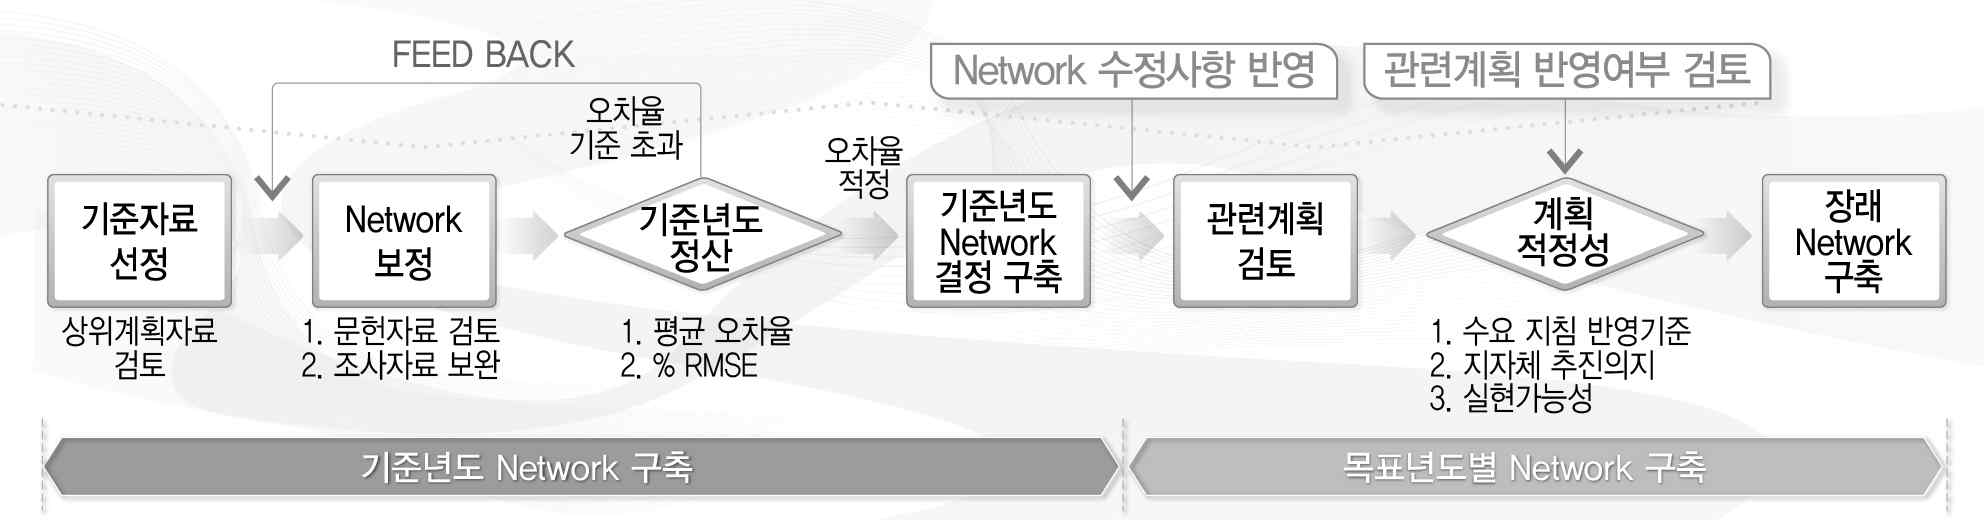 Network 구축 과정